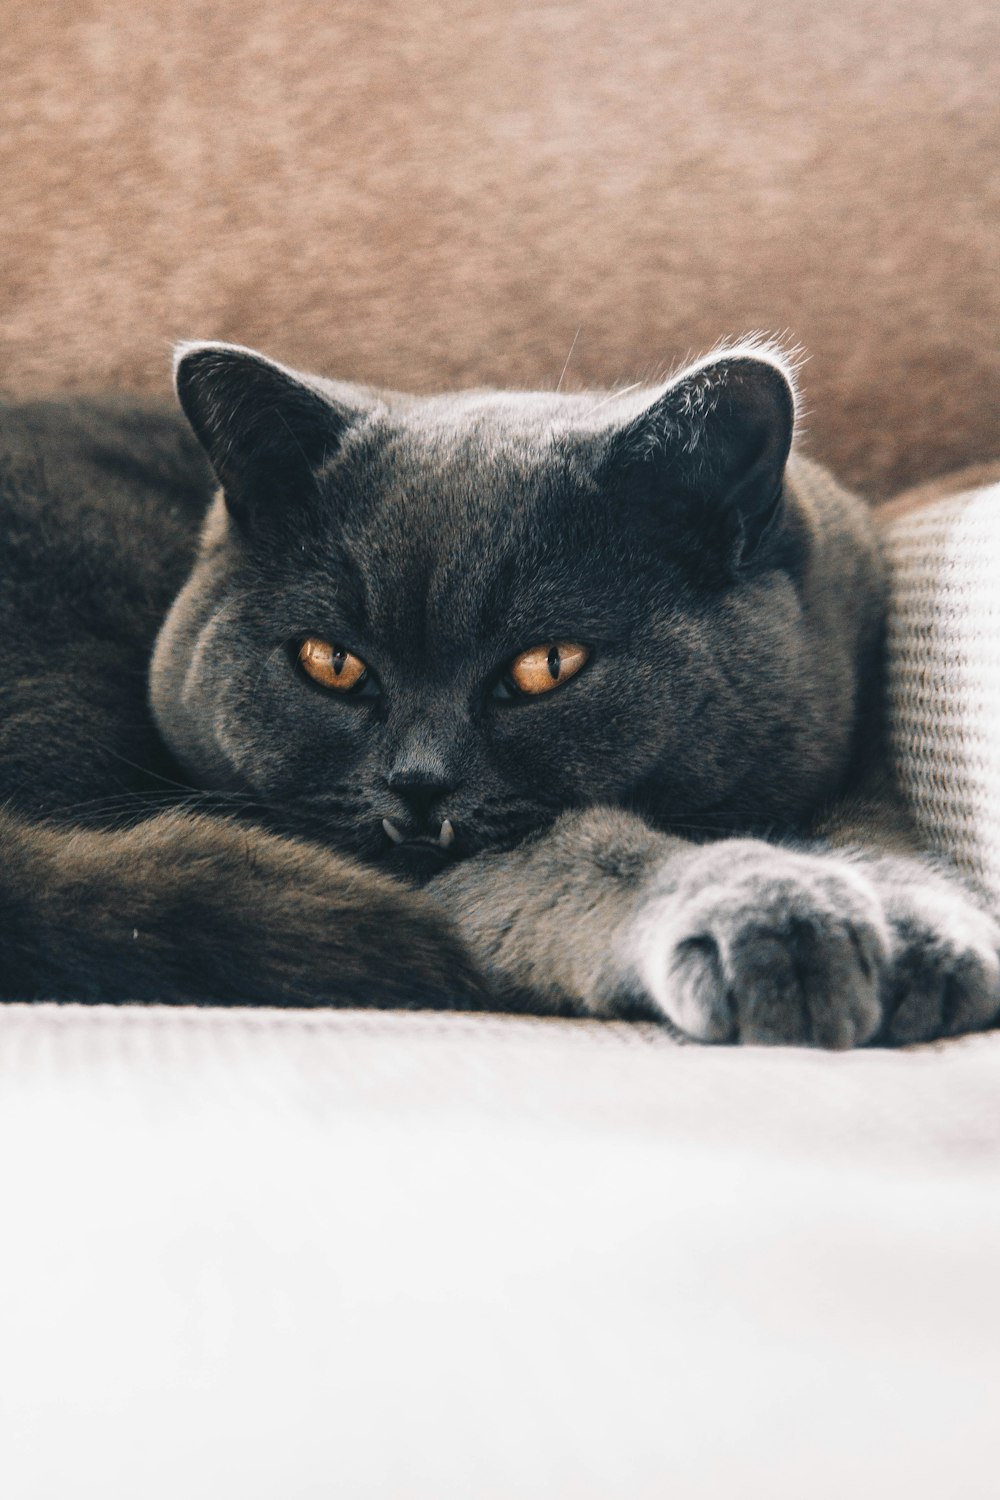 short-coated black cat on white surface